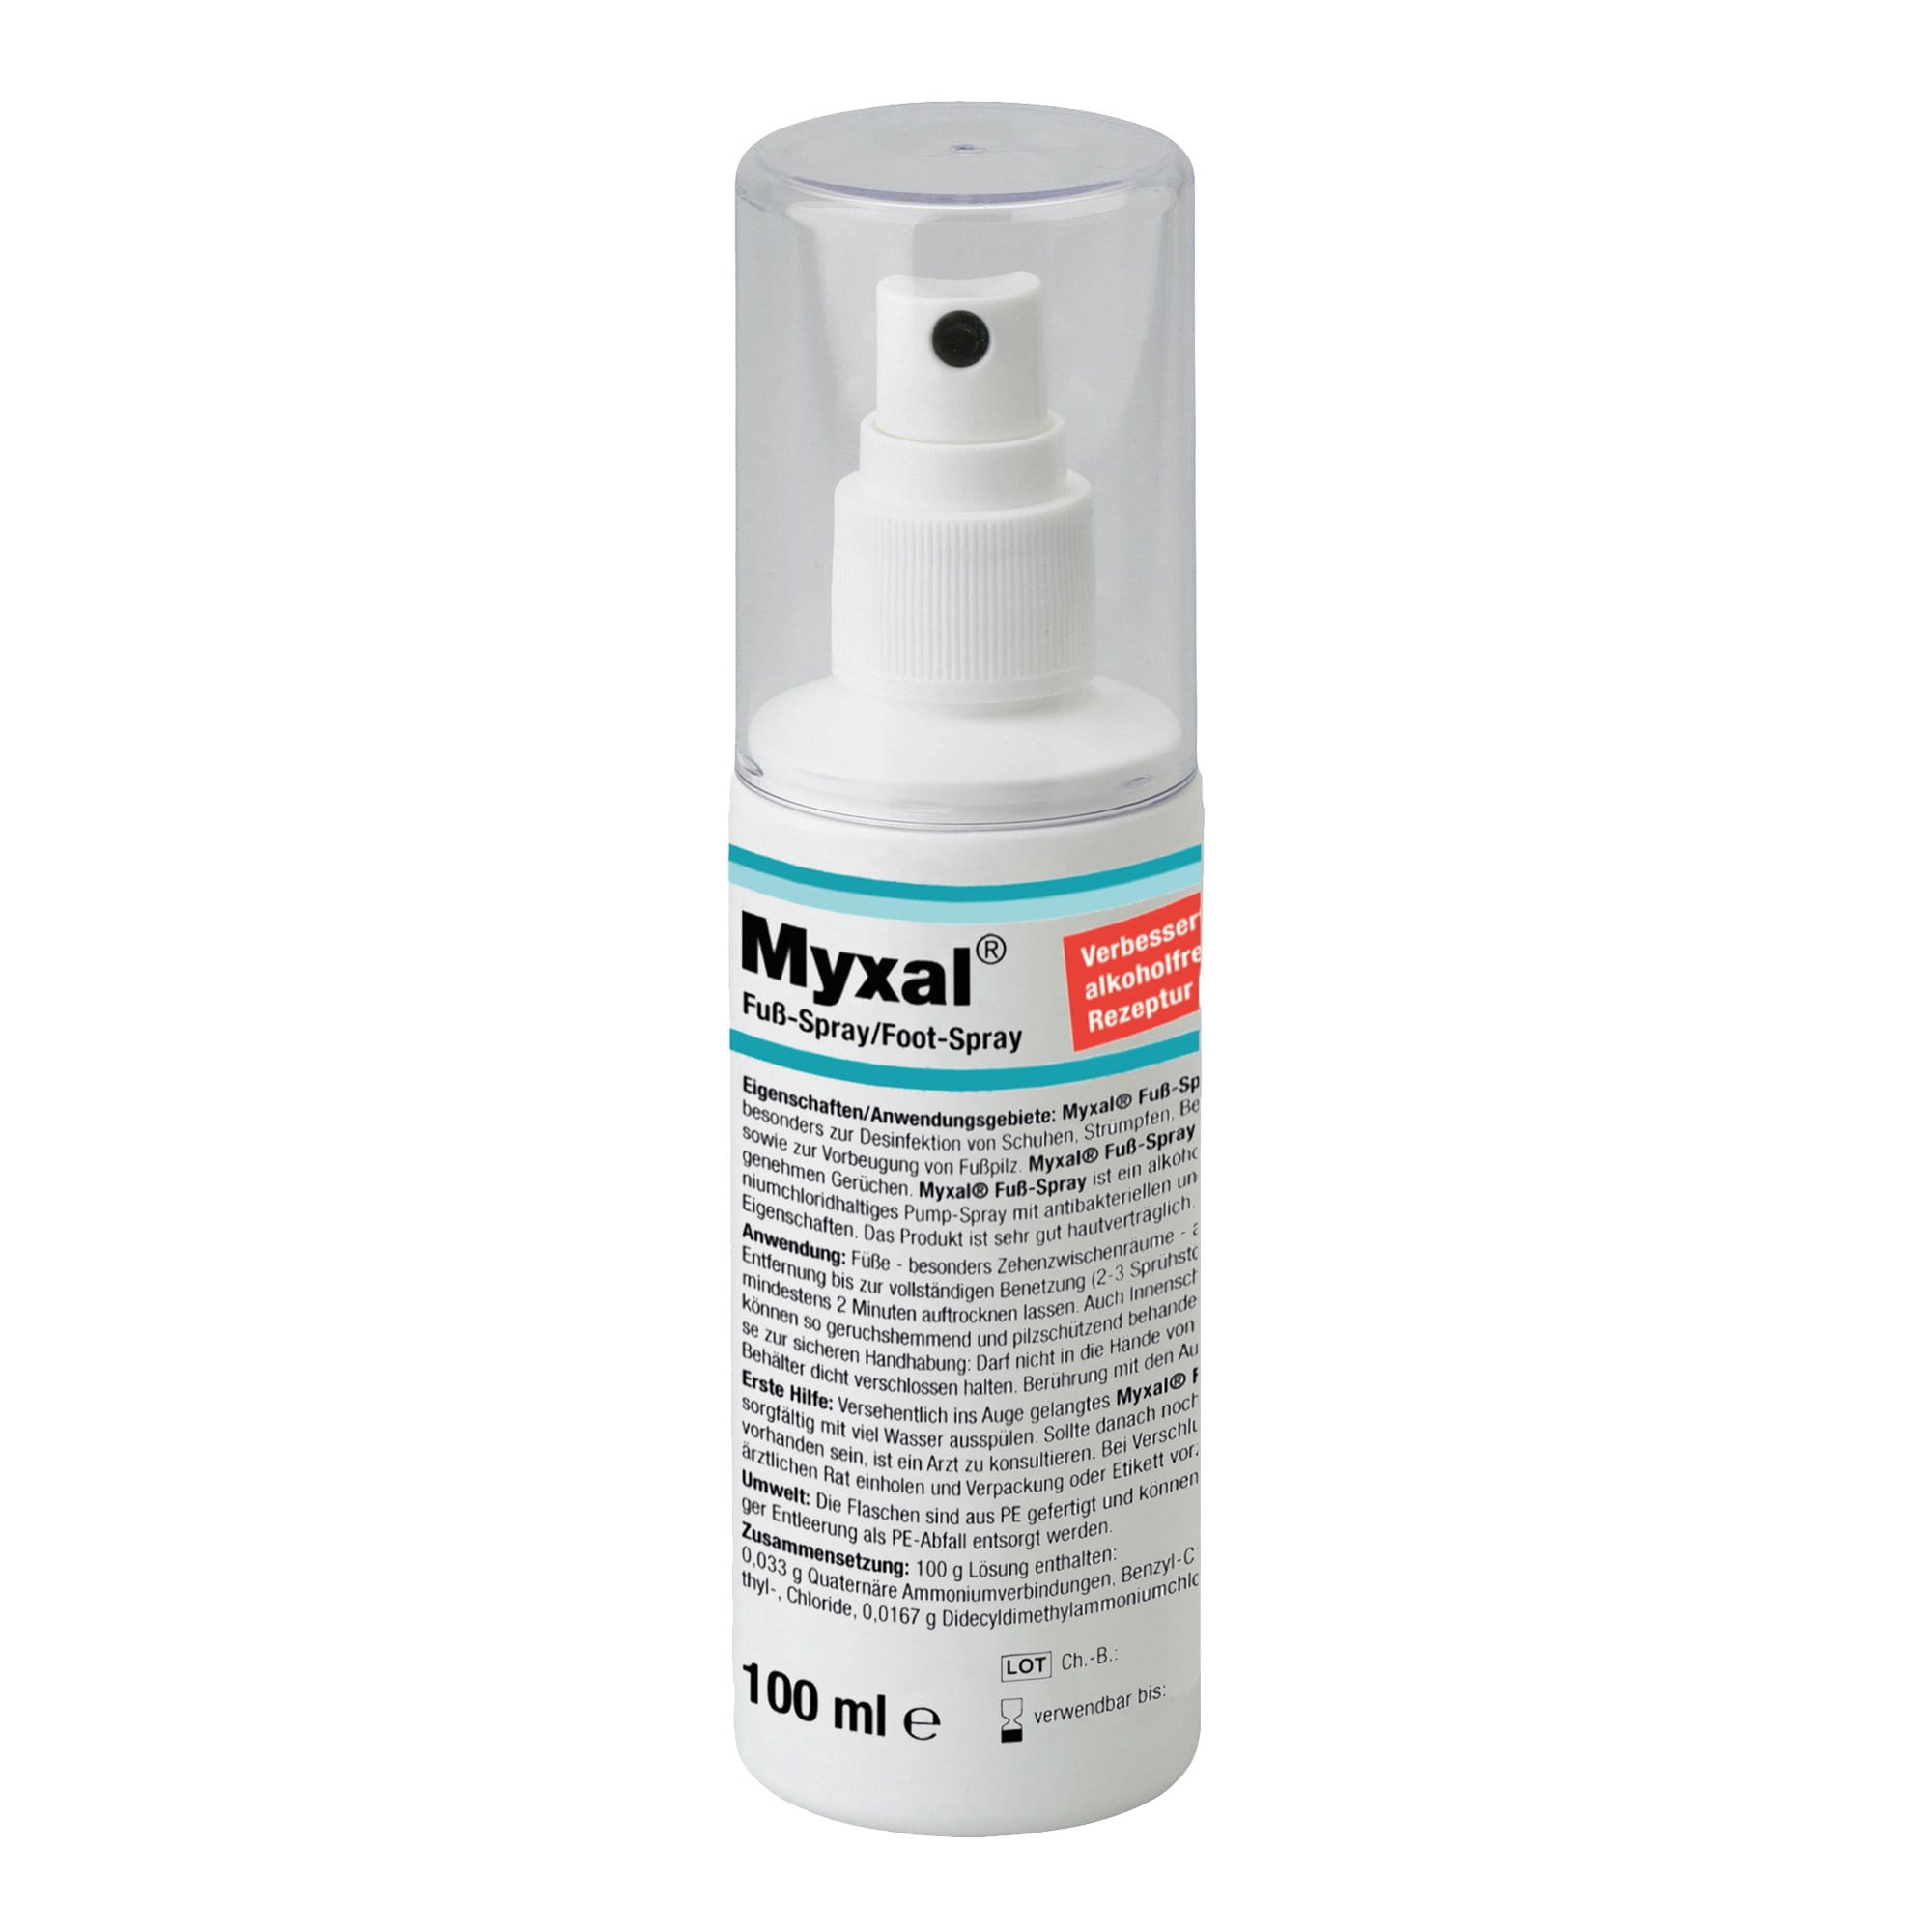 Myxal Fuß-Spray geruchsbildende Bakterien 100 ml 100 ml Flasche 13885001_1